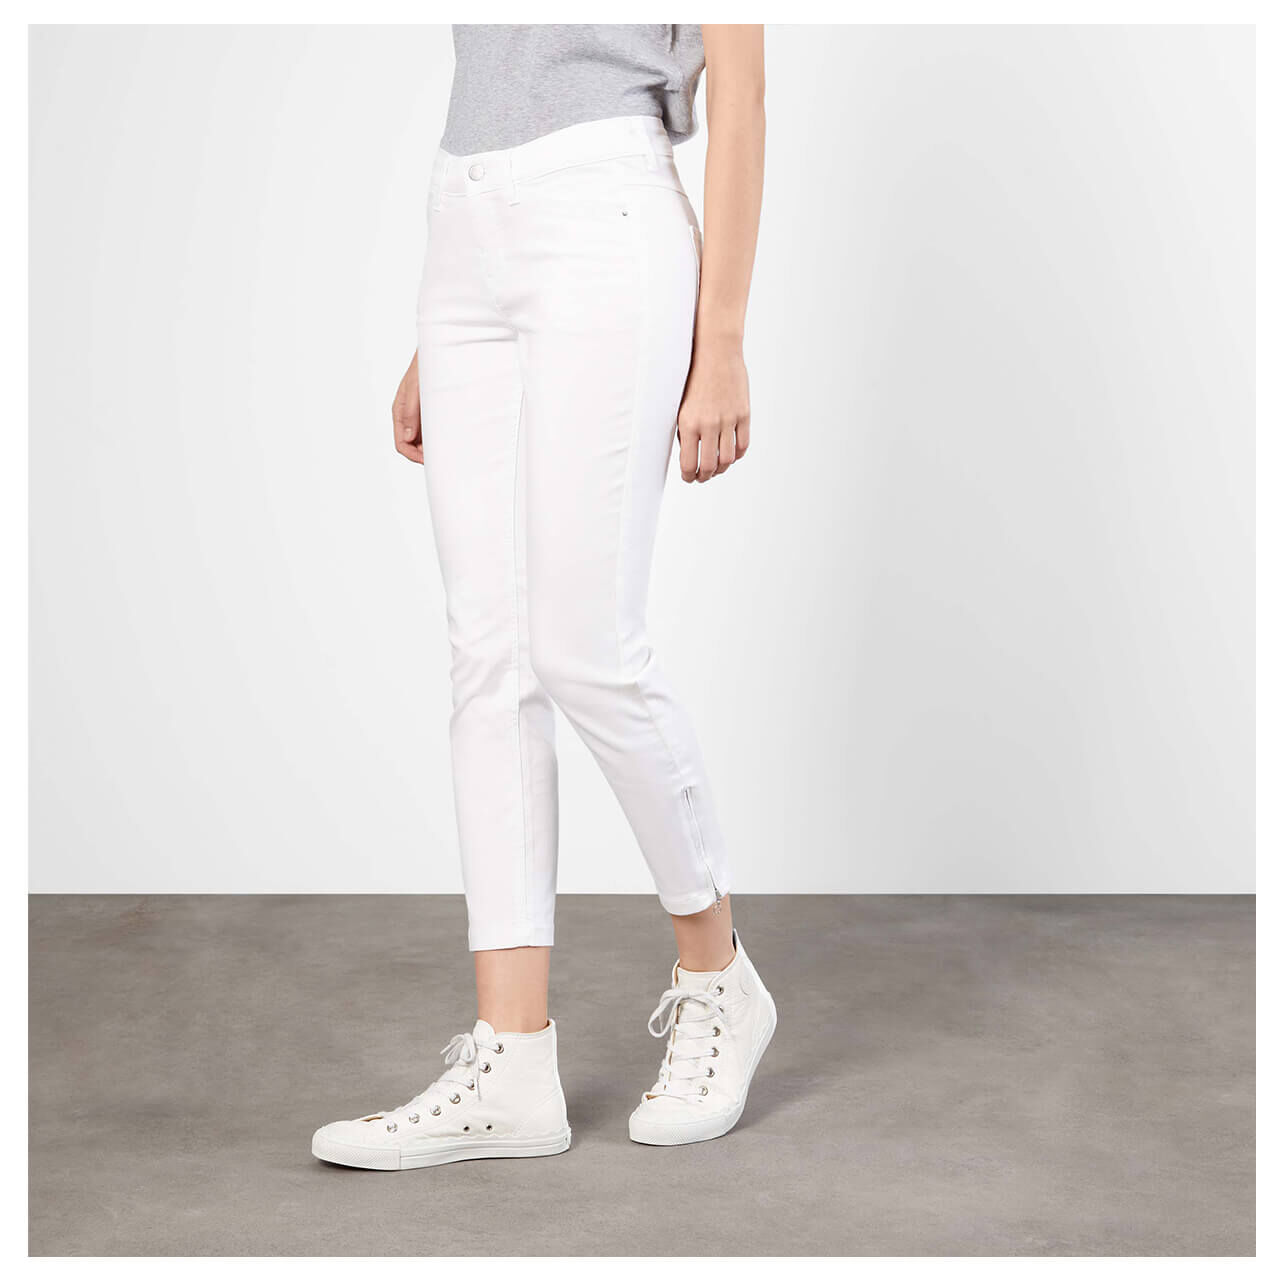 MAC Jeans Dream Chic für Damen in Weiß, FarbNr.: D010